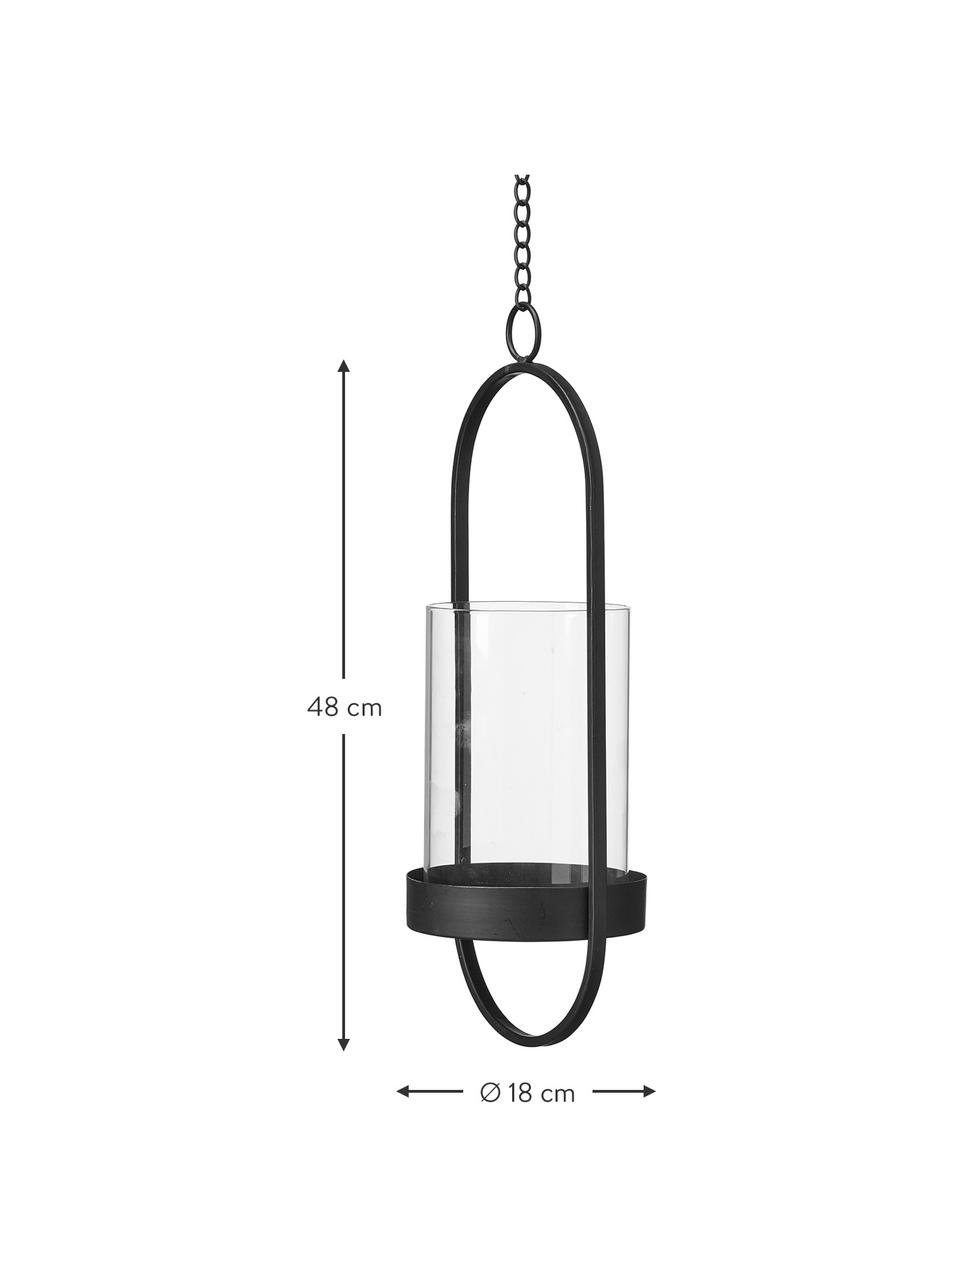 Hangende windlichtenset Tyra, 2-delig, Frame: gecoat metaal, Windlicht: glas, Zwart, Set met verschillende formaten